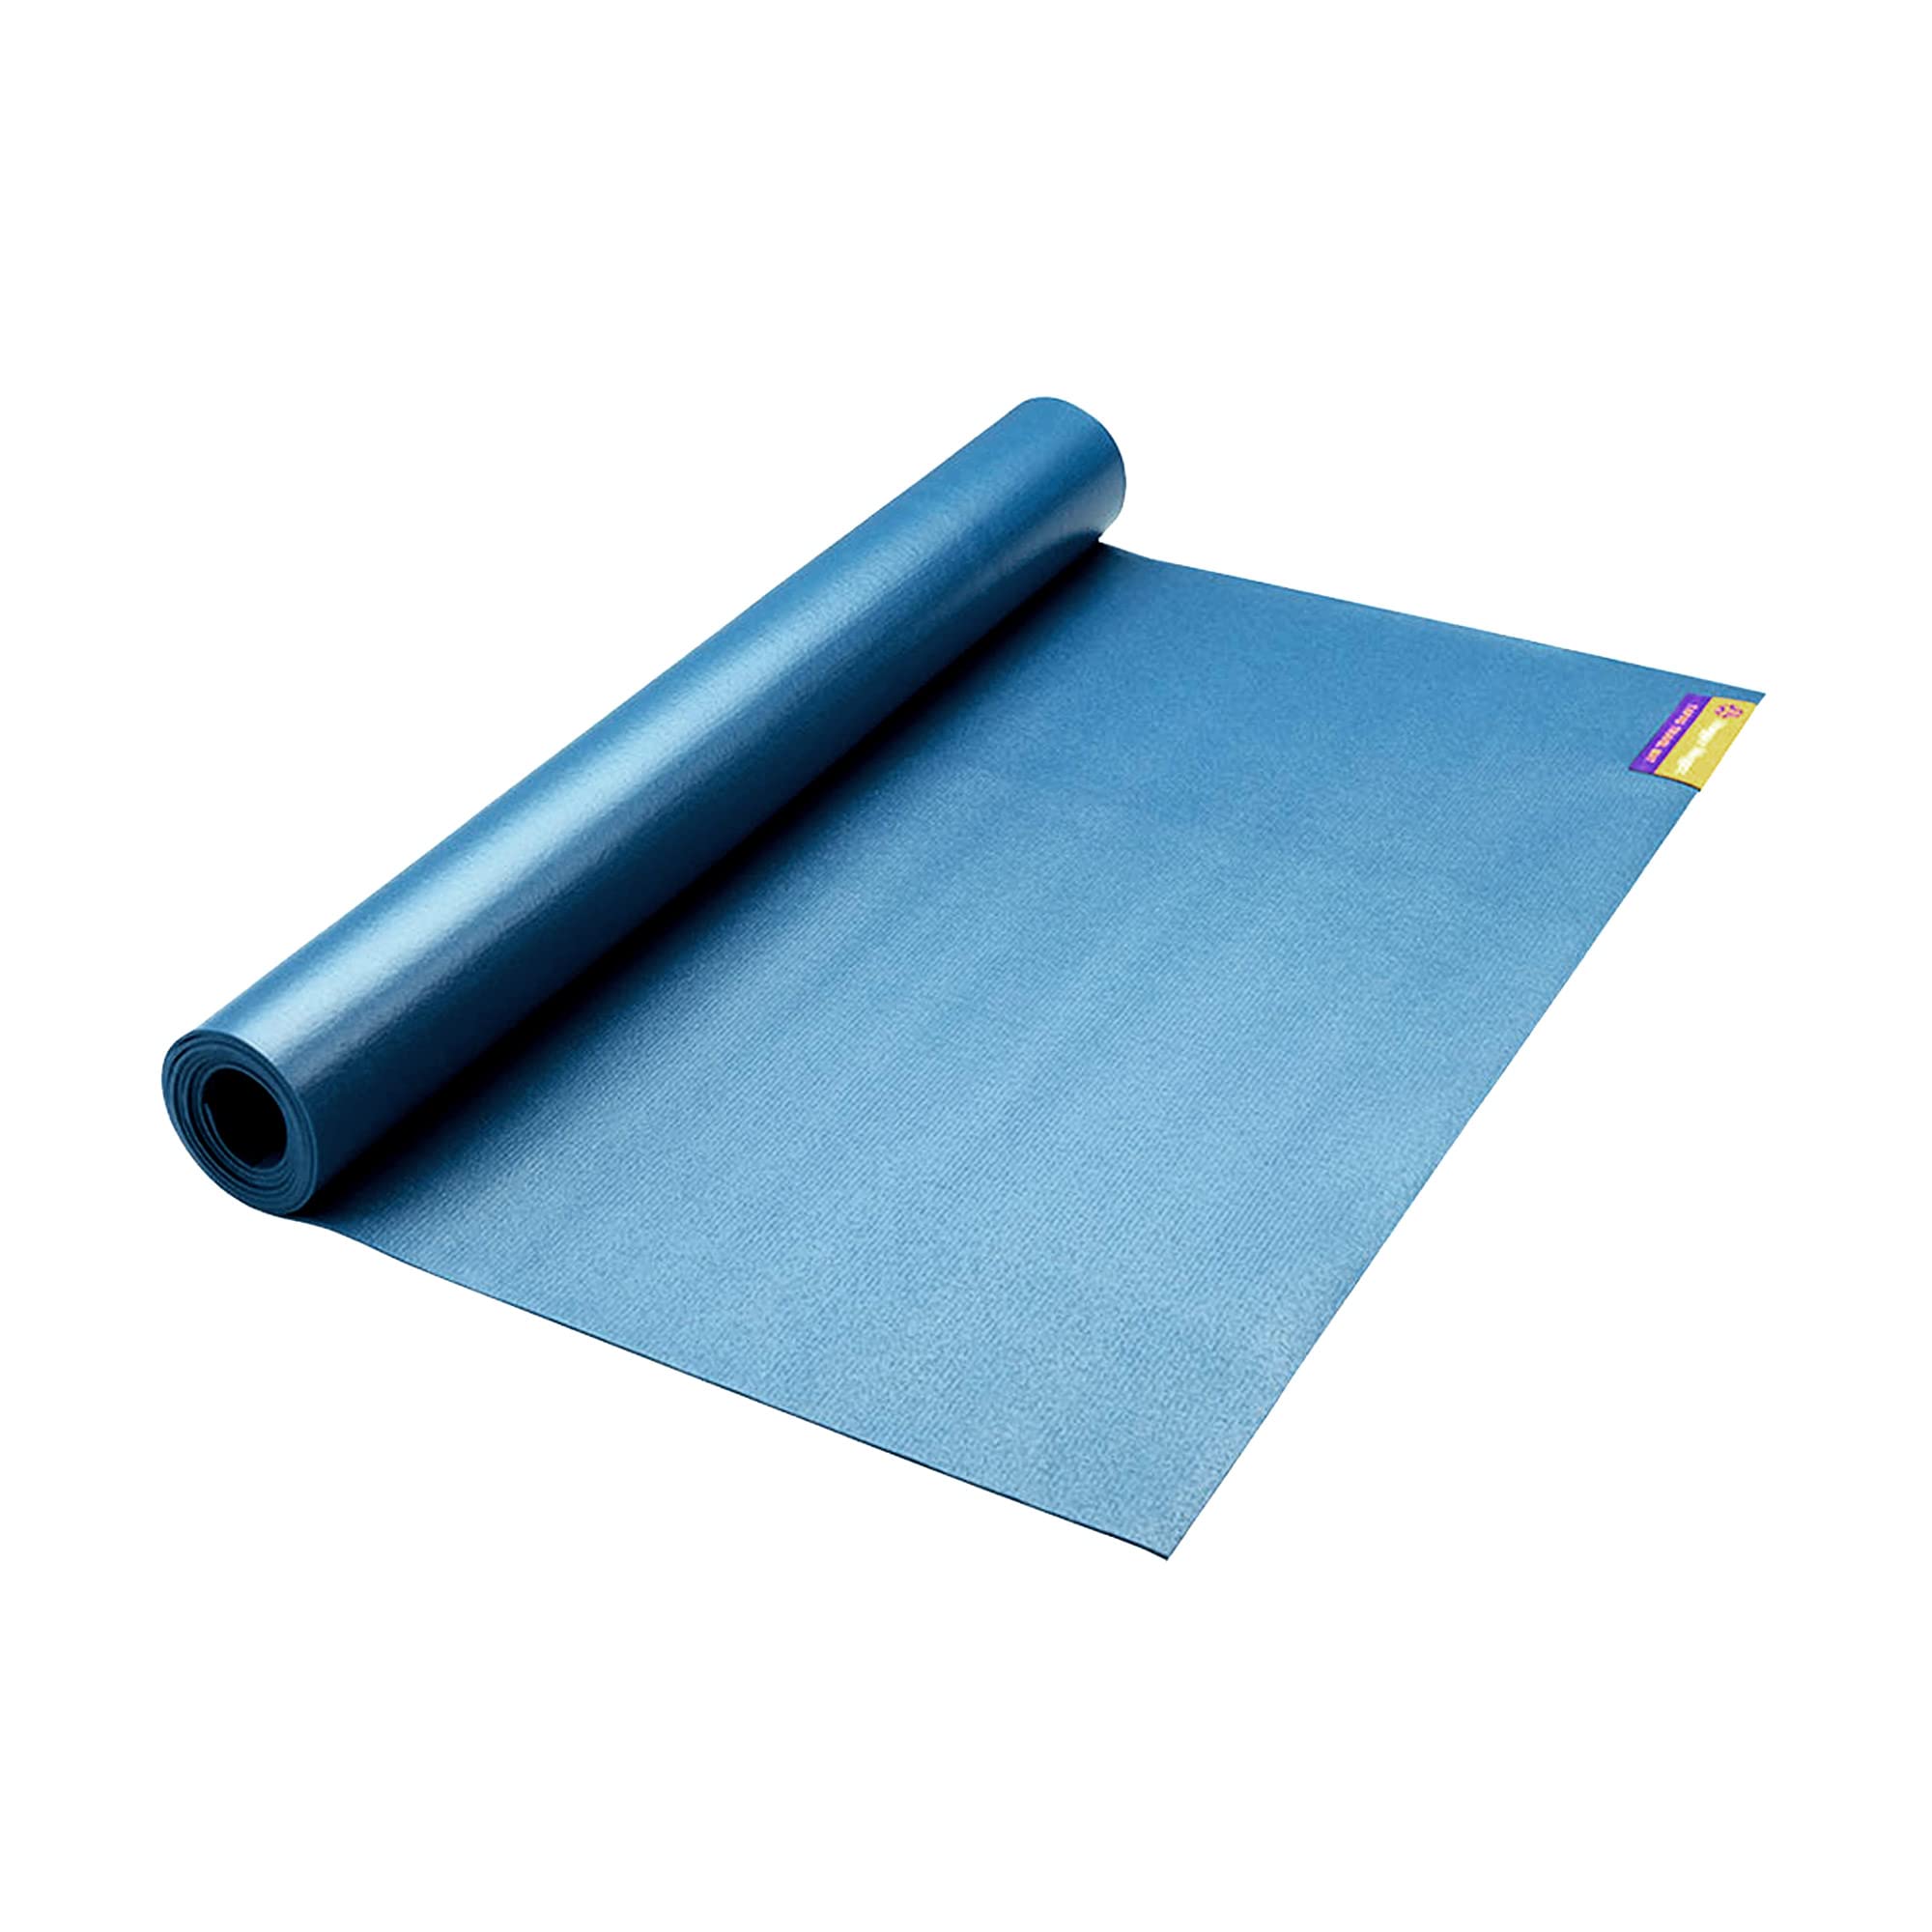 Hugger Mugger Tapas Reise-Yogamatte, Blau, super tragbar und langlebig, strukturierte klebrige Oberfläche, kann gefaltet oder gerollt werden, verstaubar, wirtschaftlich